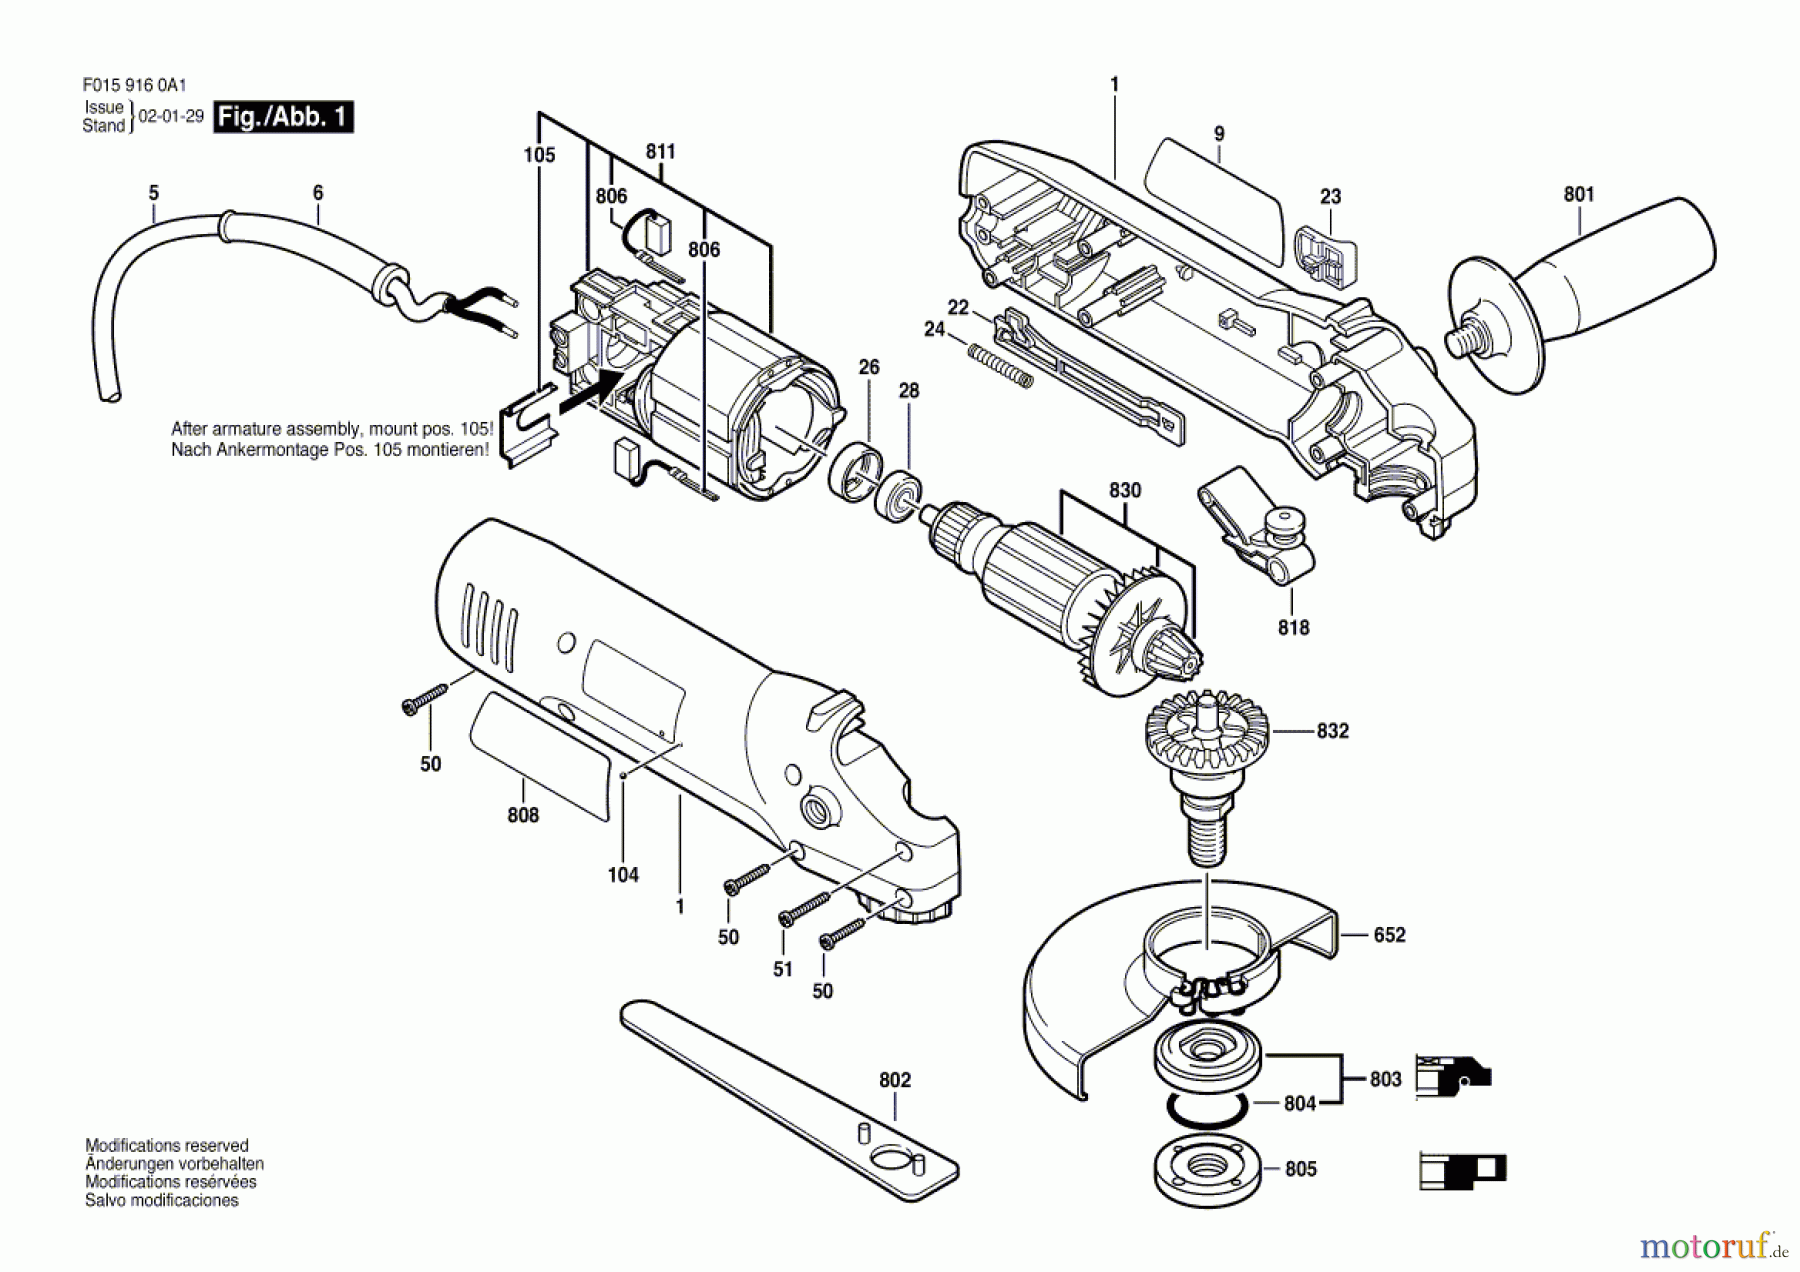  Bosch Werkzeug Winkelschleifer 9165 Seite 1